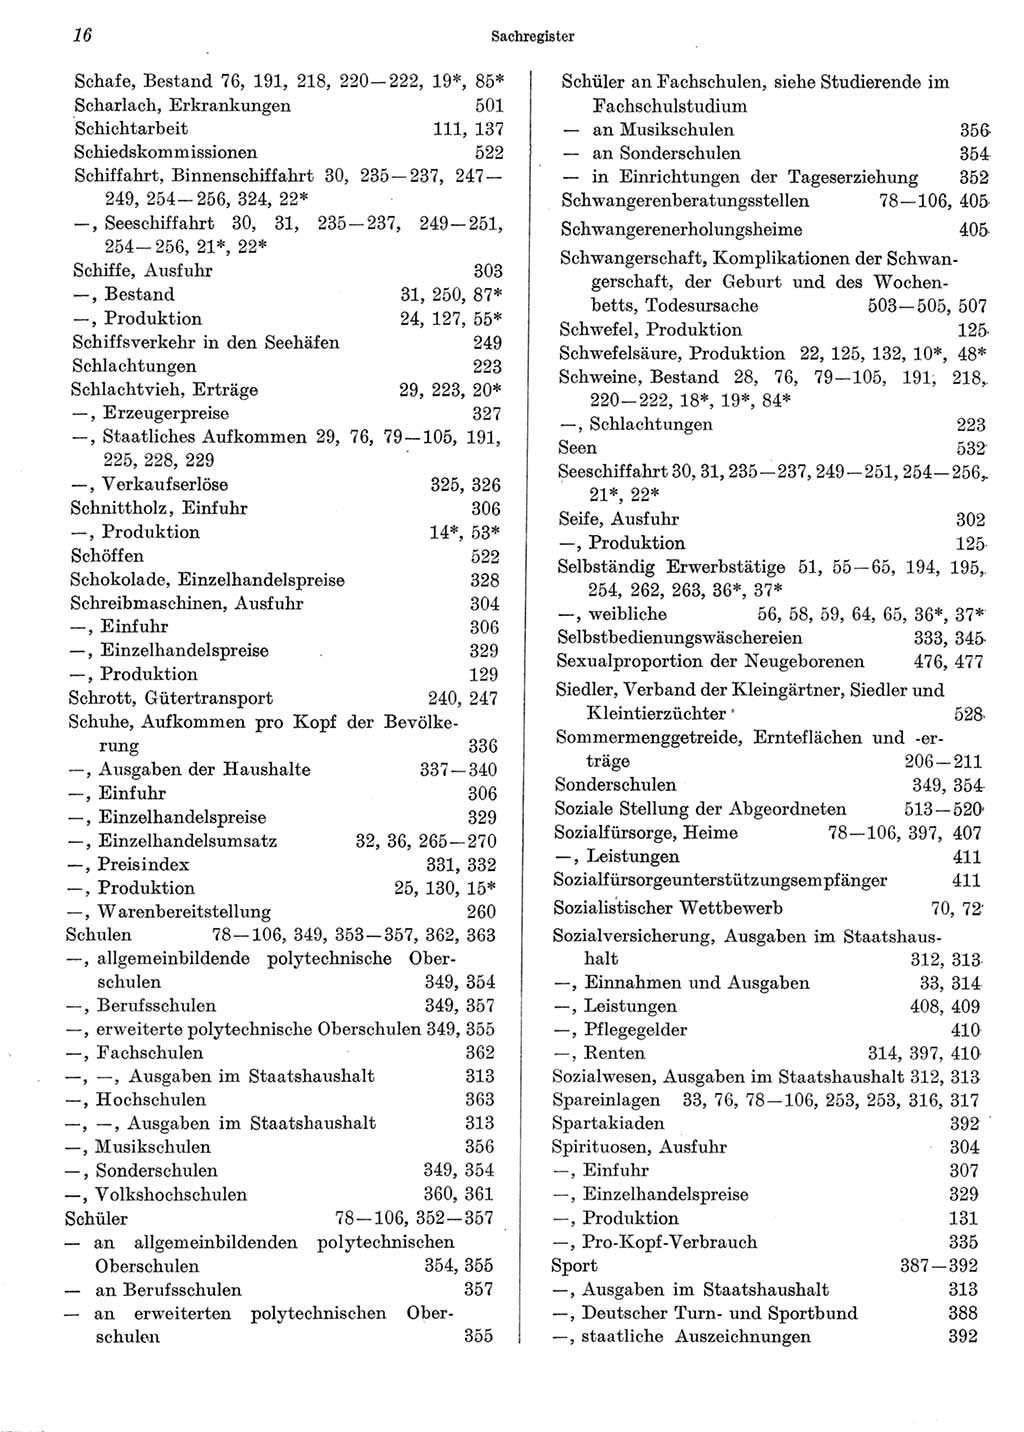 Statistisches Jahrbuch der Deutschen Demokratischen Republik (DDR) 1973, Seite 16 (Stat. Jb. DDR 1973, S. 16)